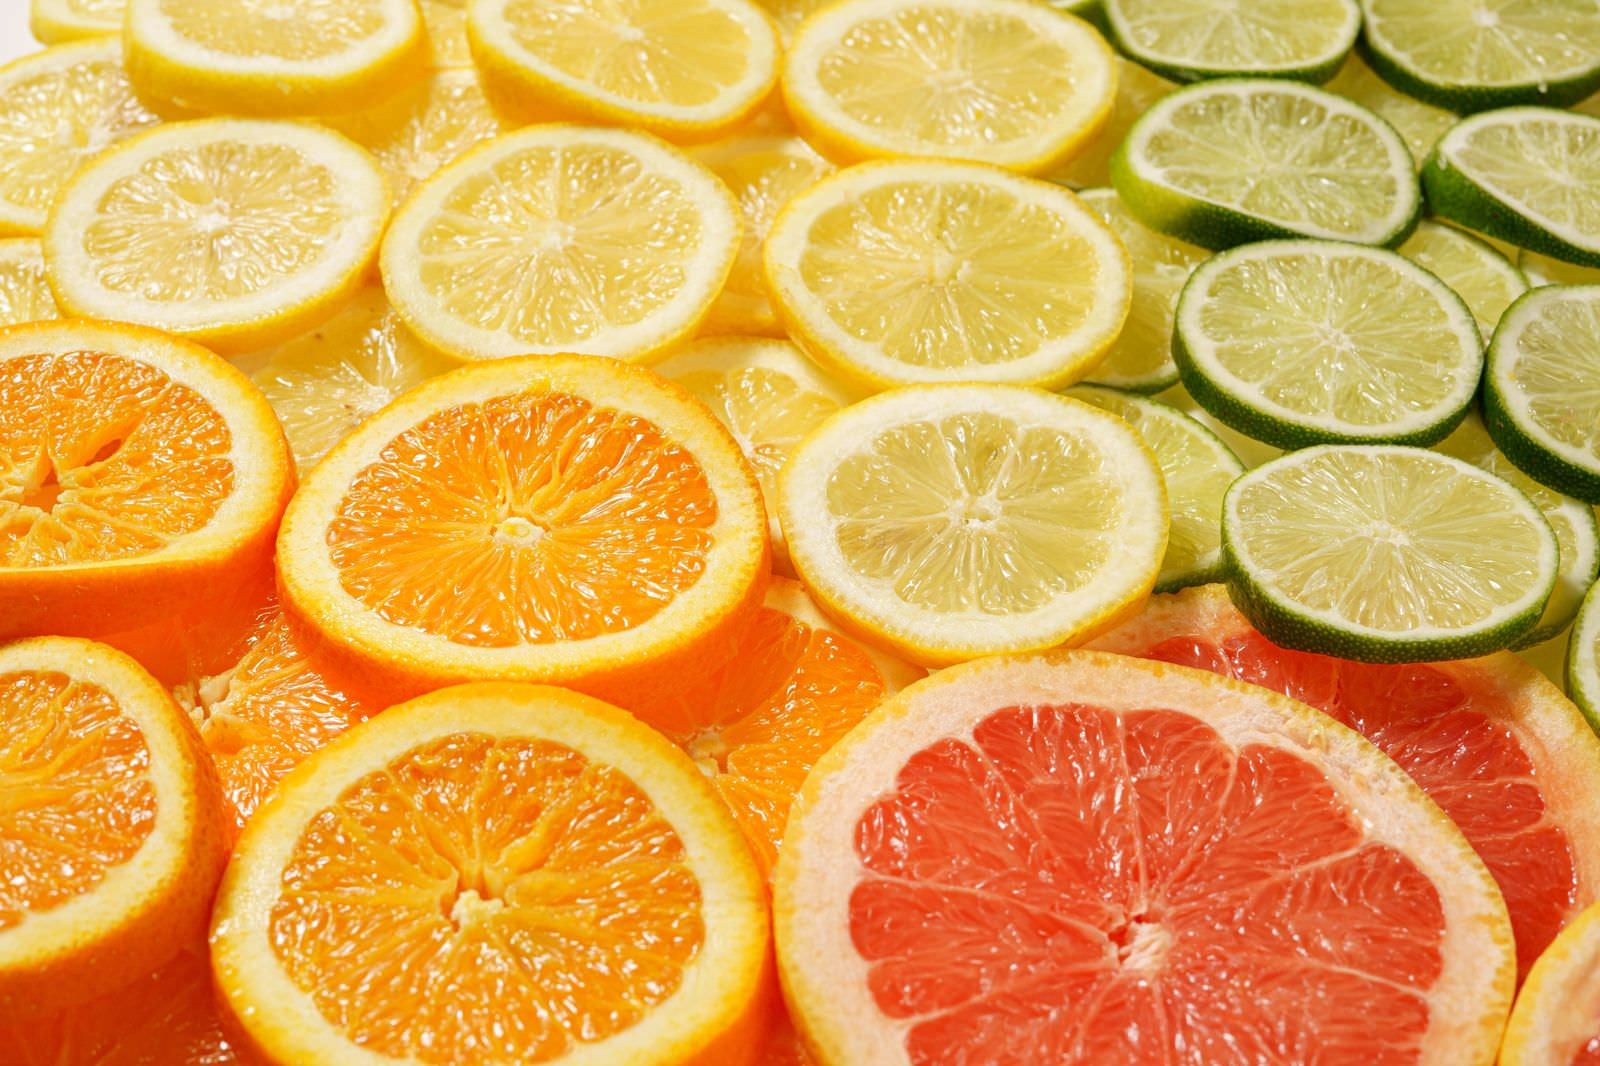 「柑橘類のカットフルーツ」の写真